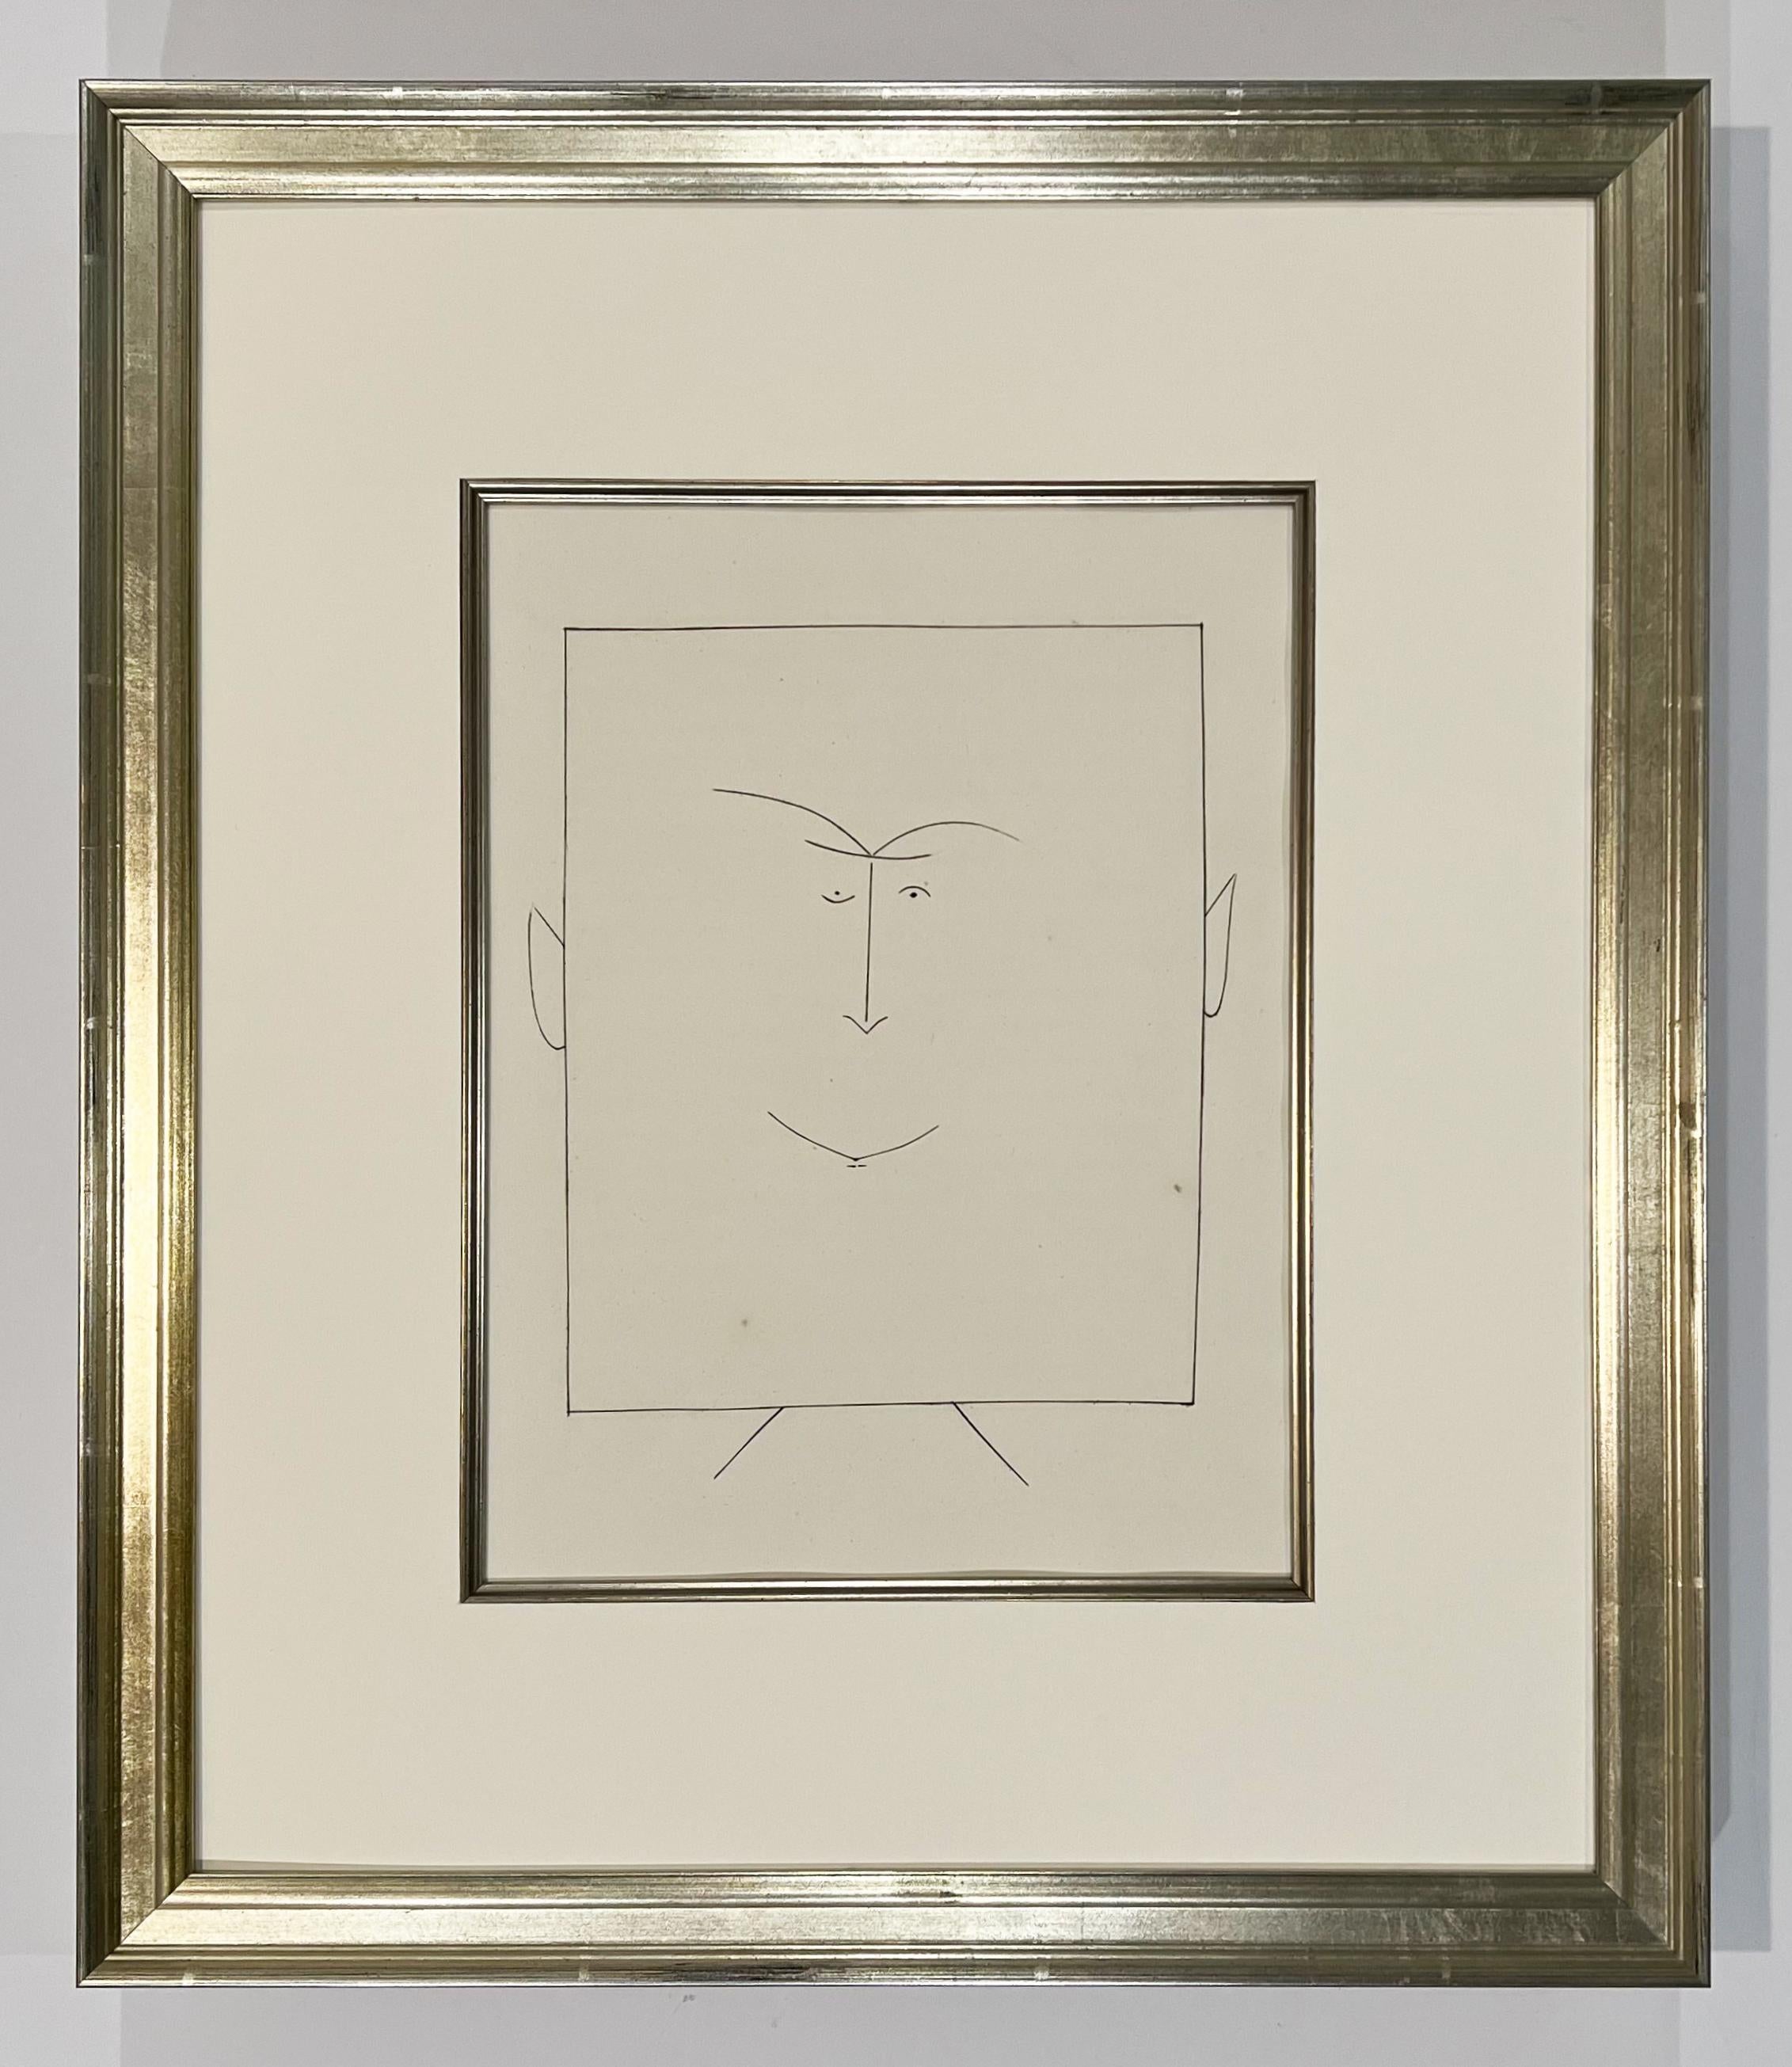 Quadratischer Kopf eines Mannes mit Ohren (Teller III), von Carmen – Print von Pablo Picasso